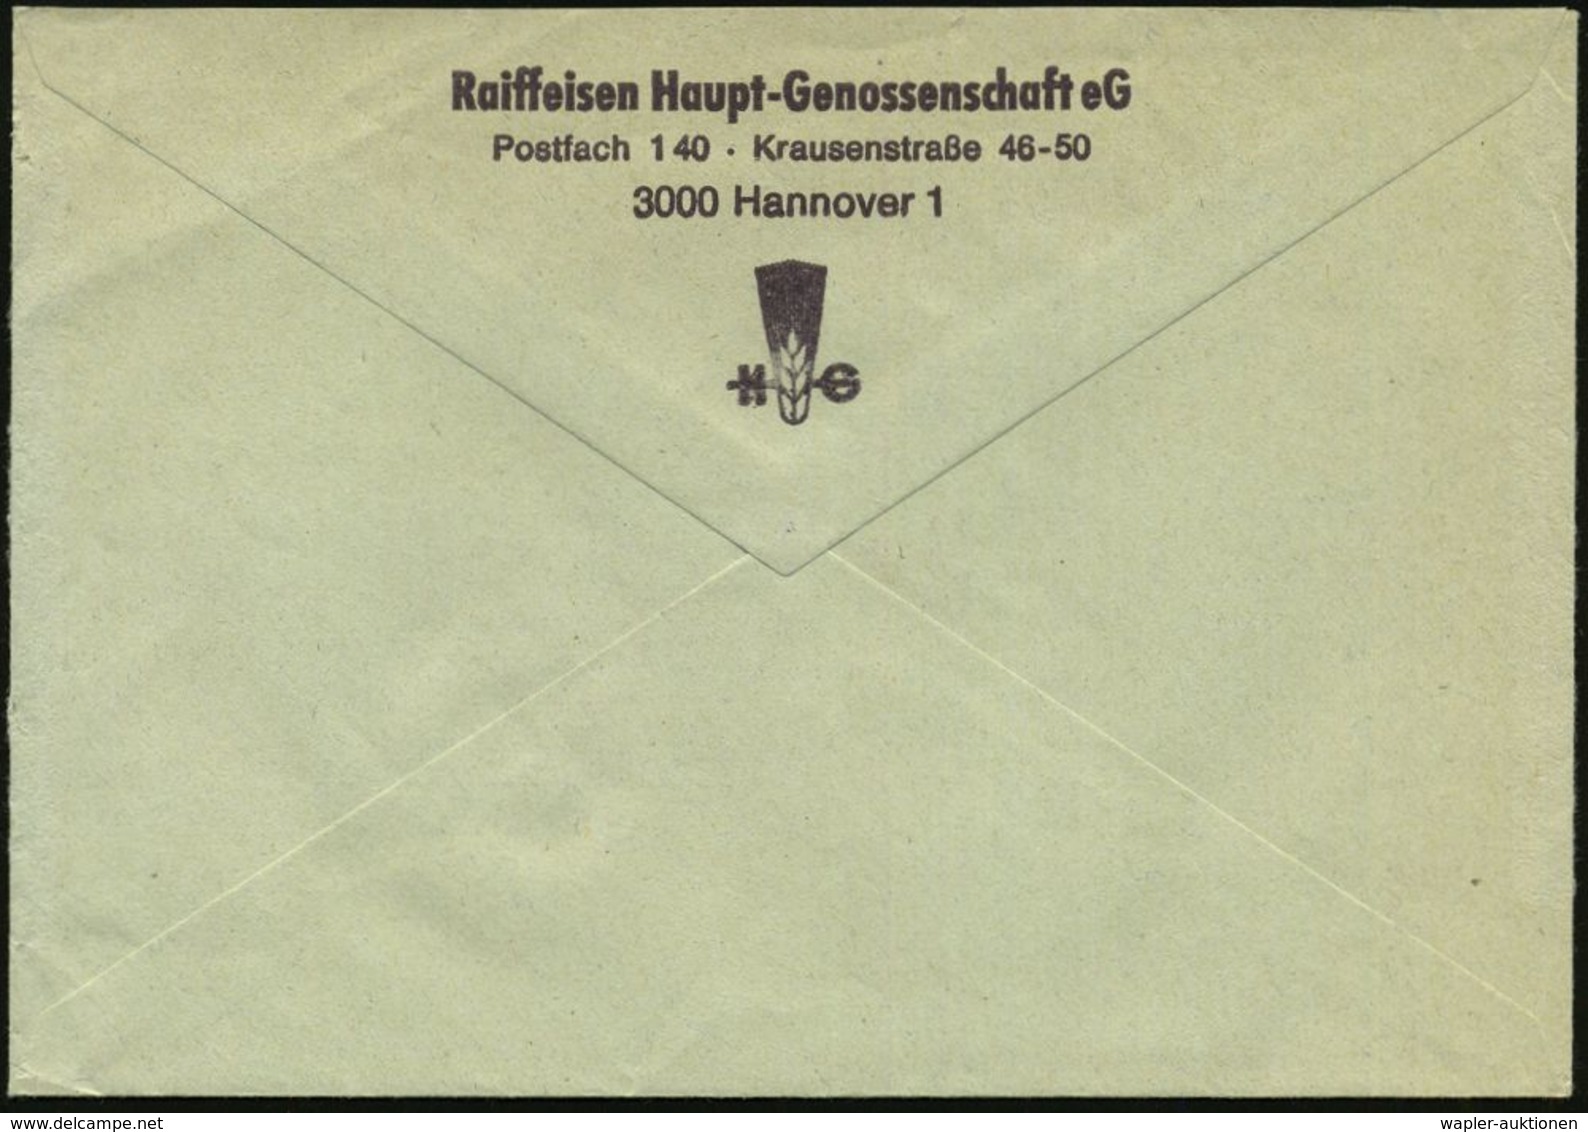 GENOSSENSCHAFTS-BEWEGUNG / RAIFFEISEN : 3000 HANNOVER 109/ HG/ Raiffeisen/ Hauptgenossenschaft EG 1980 (16.5.) AFS 330 P - Autres & Non Classés